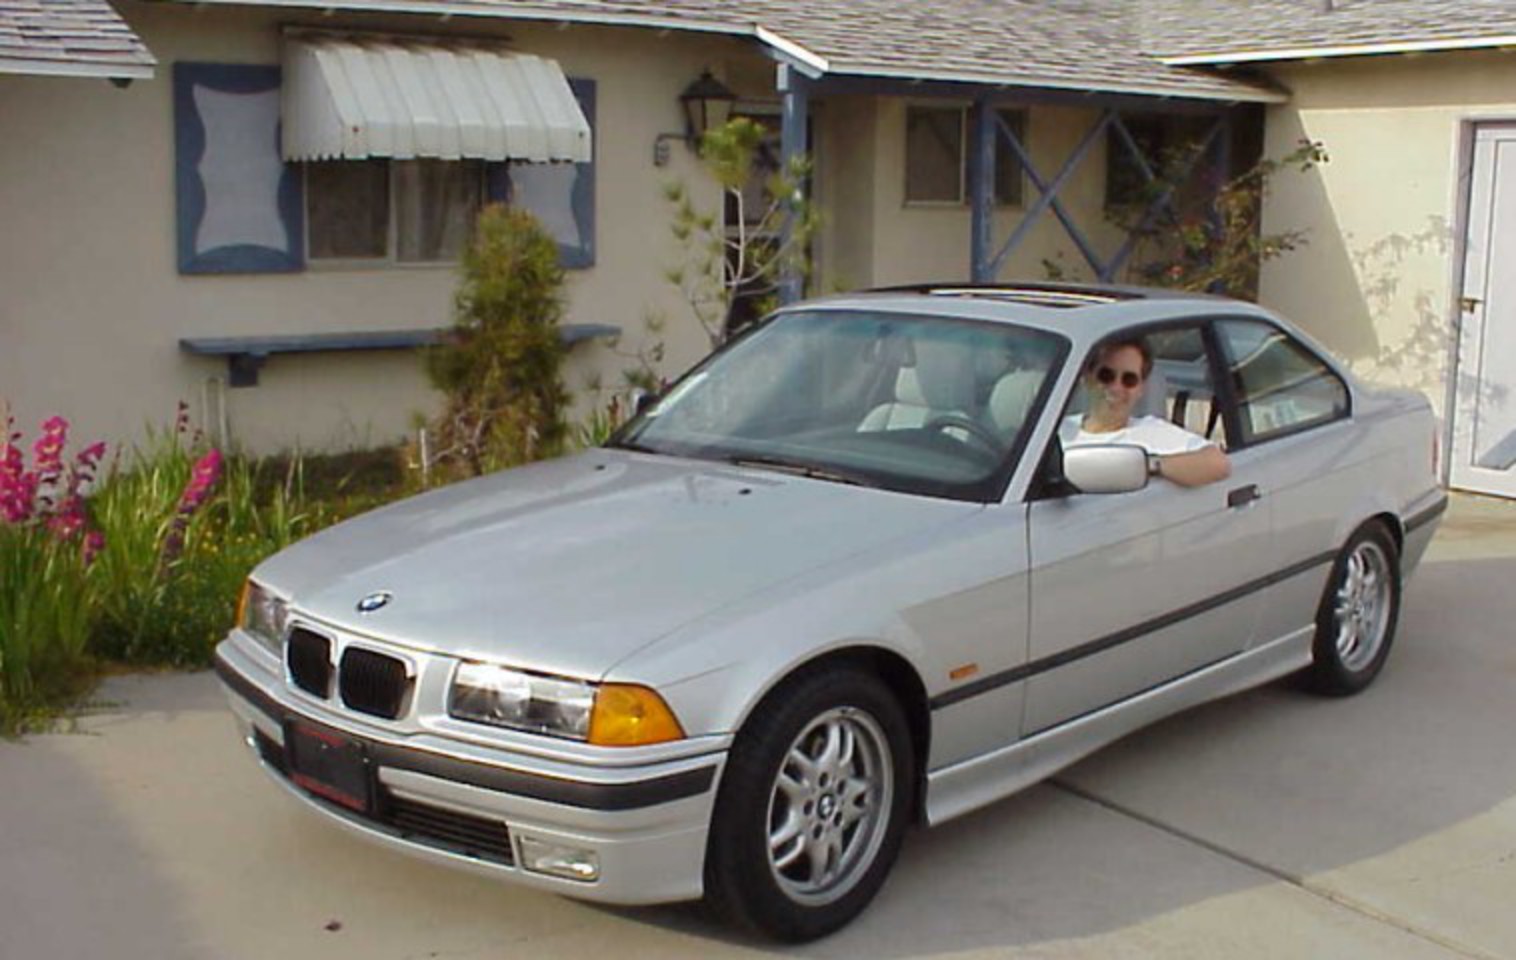 Me in the 1999 BMW 323is I used to have in front of my house.